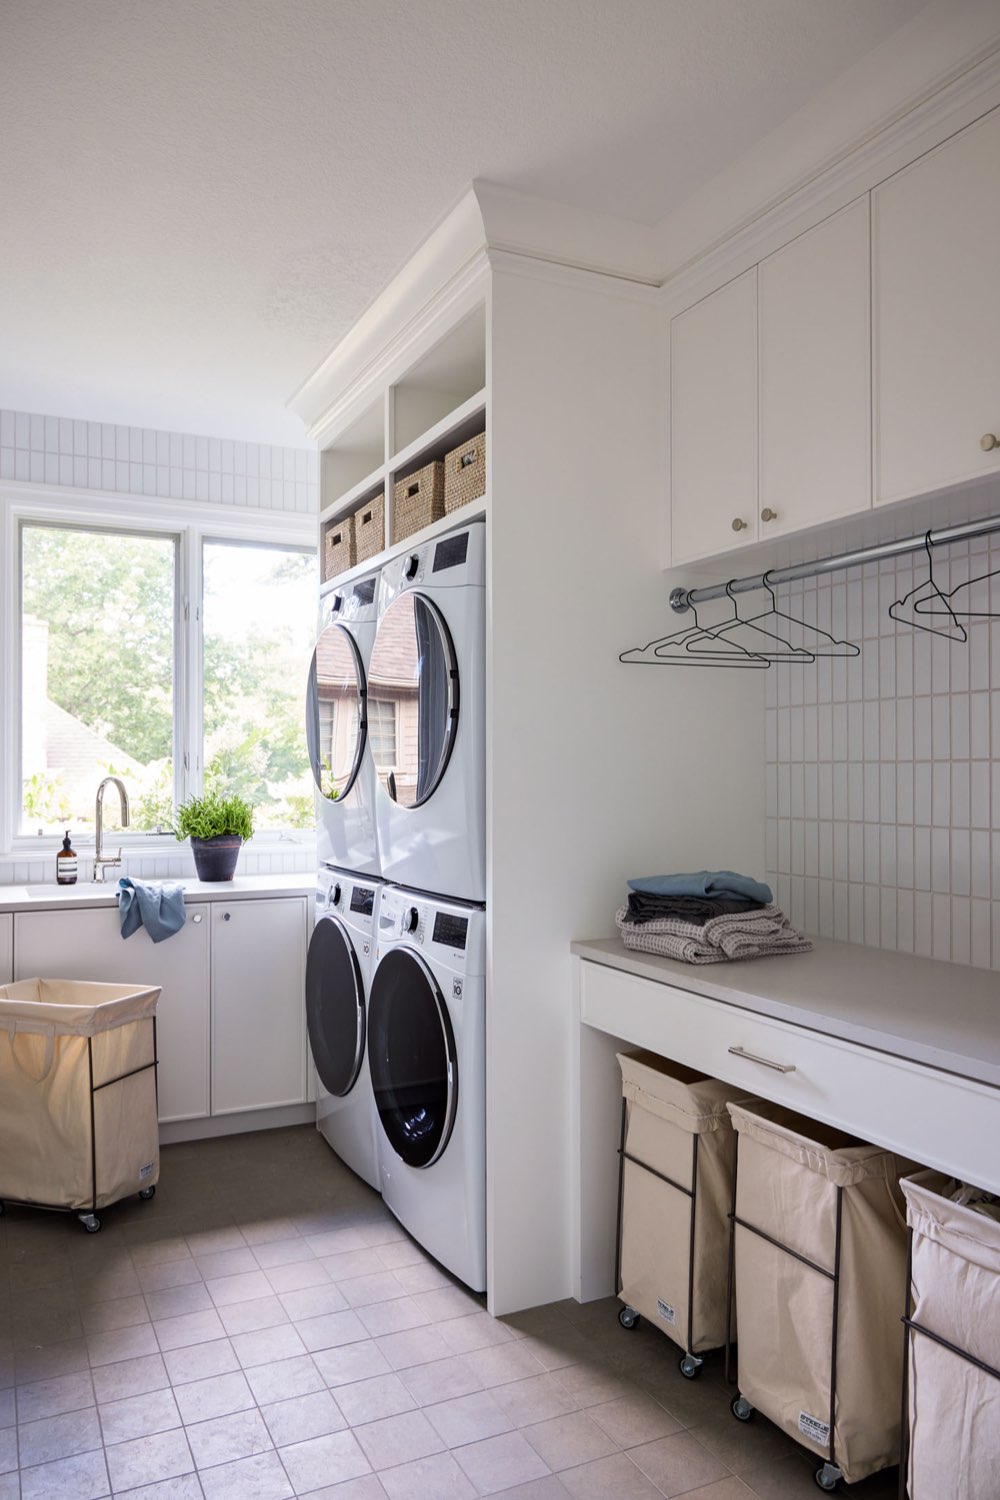 maison classique claire decor equilibre organisation buanderie pratique et fonctionnelle machine à laver sèche-linge placard